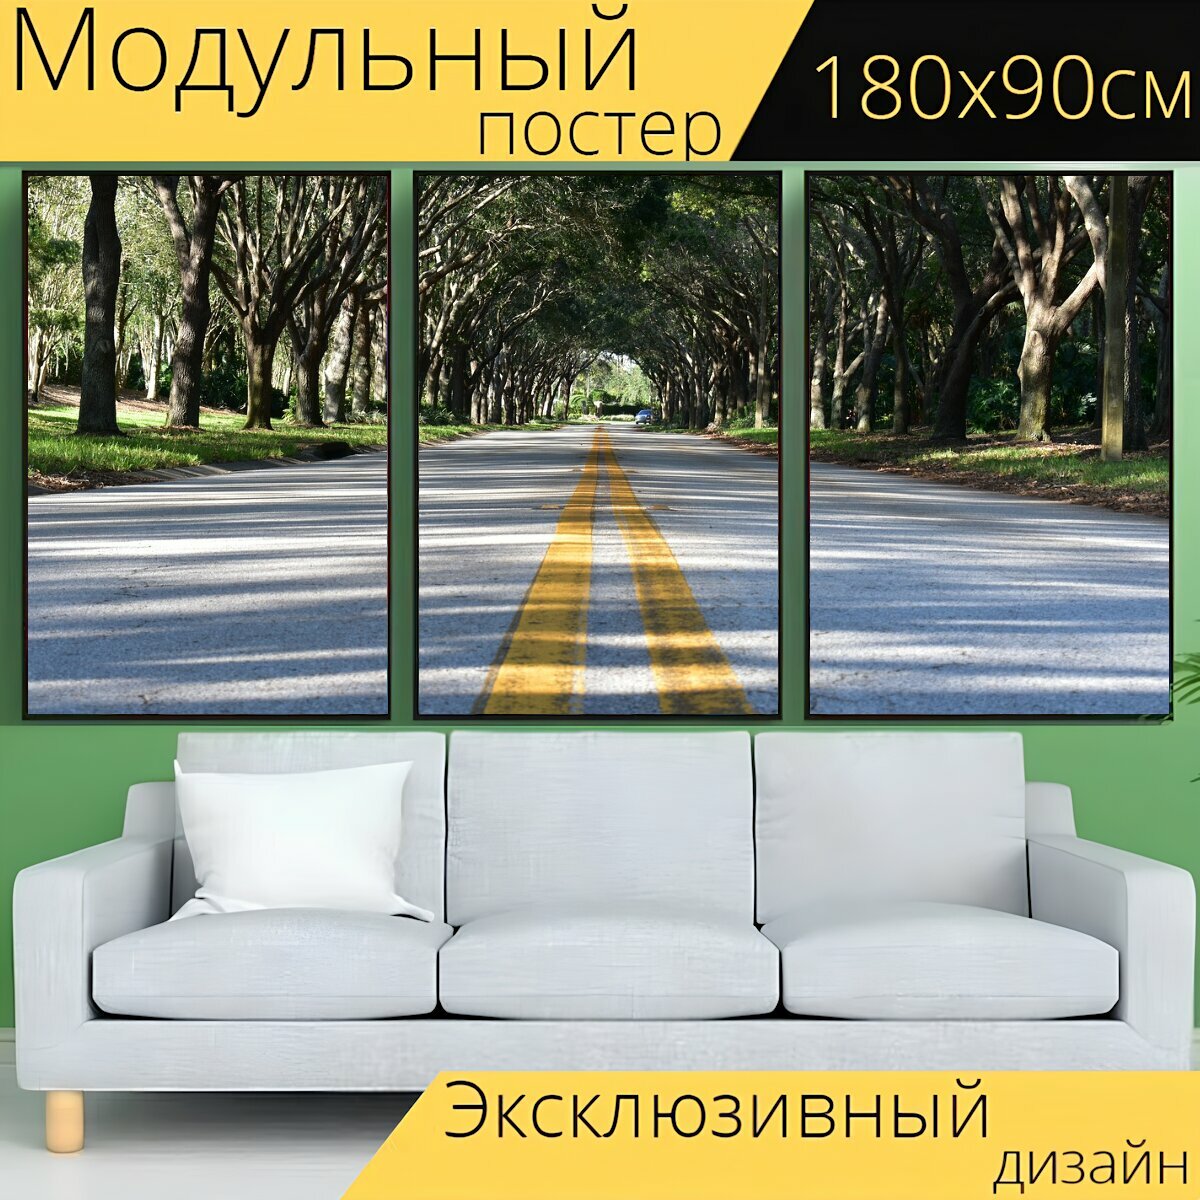 Модульный постер "Дорога, тротуар, асфальт" 180 x 90 см. для интерьера